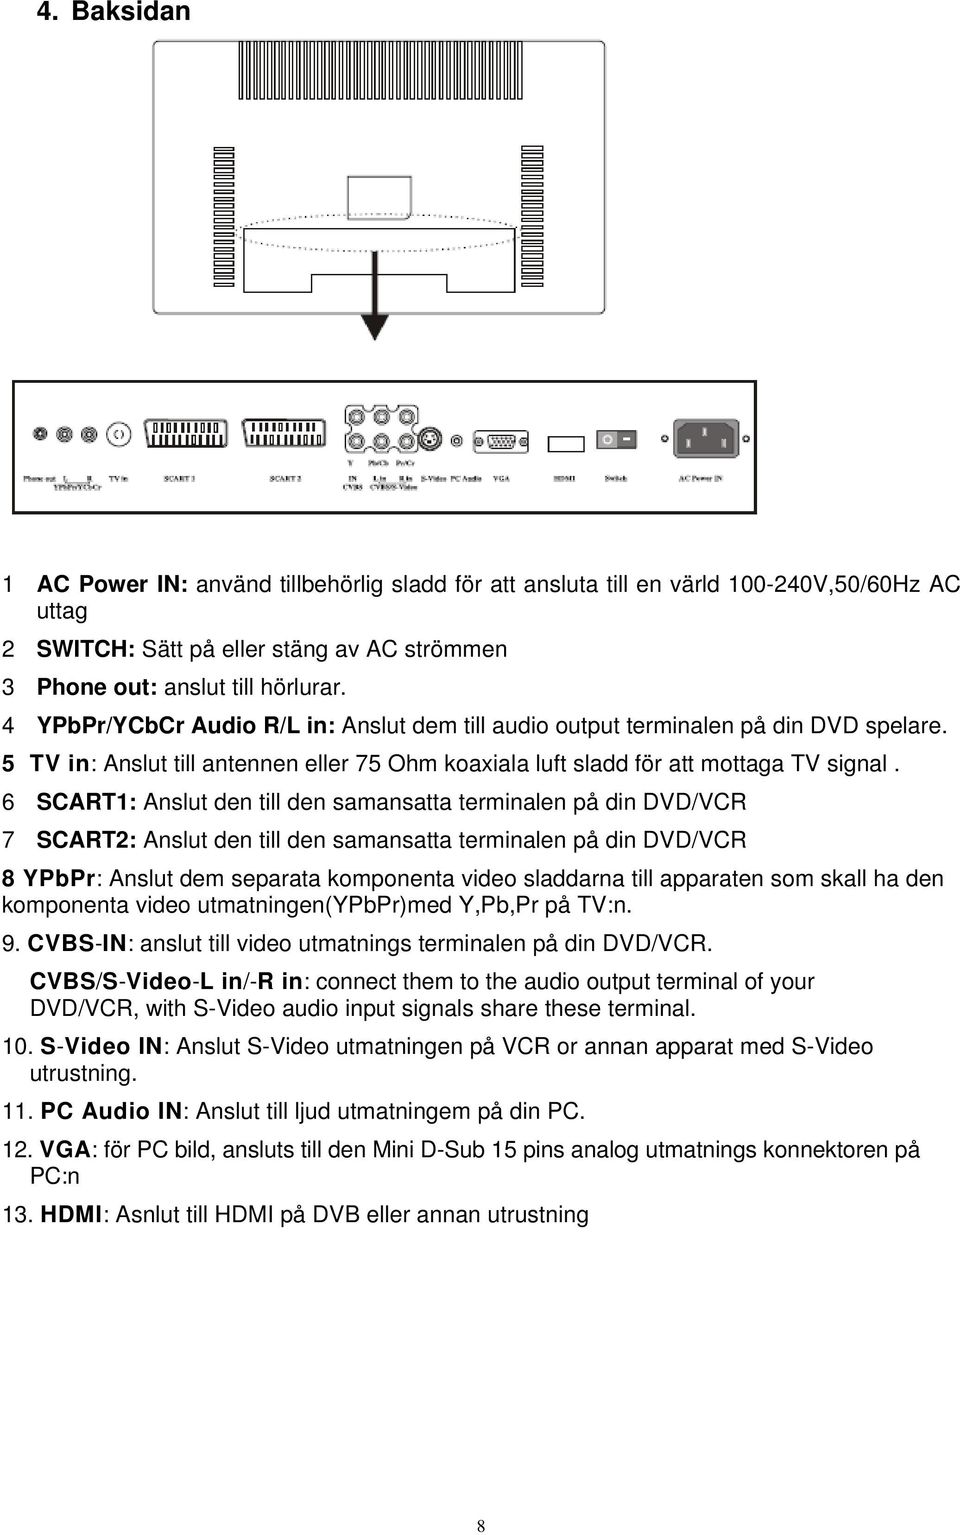 6 SCART1: Anslut den till den samansatta terminalen på din DVD/VCR 7 SCART2: Anslut den till den samansatta terminalen på din DVD/VCR 8 YPbPr: Anslut dem separata komponenta video sladdarna till